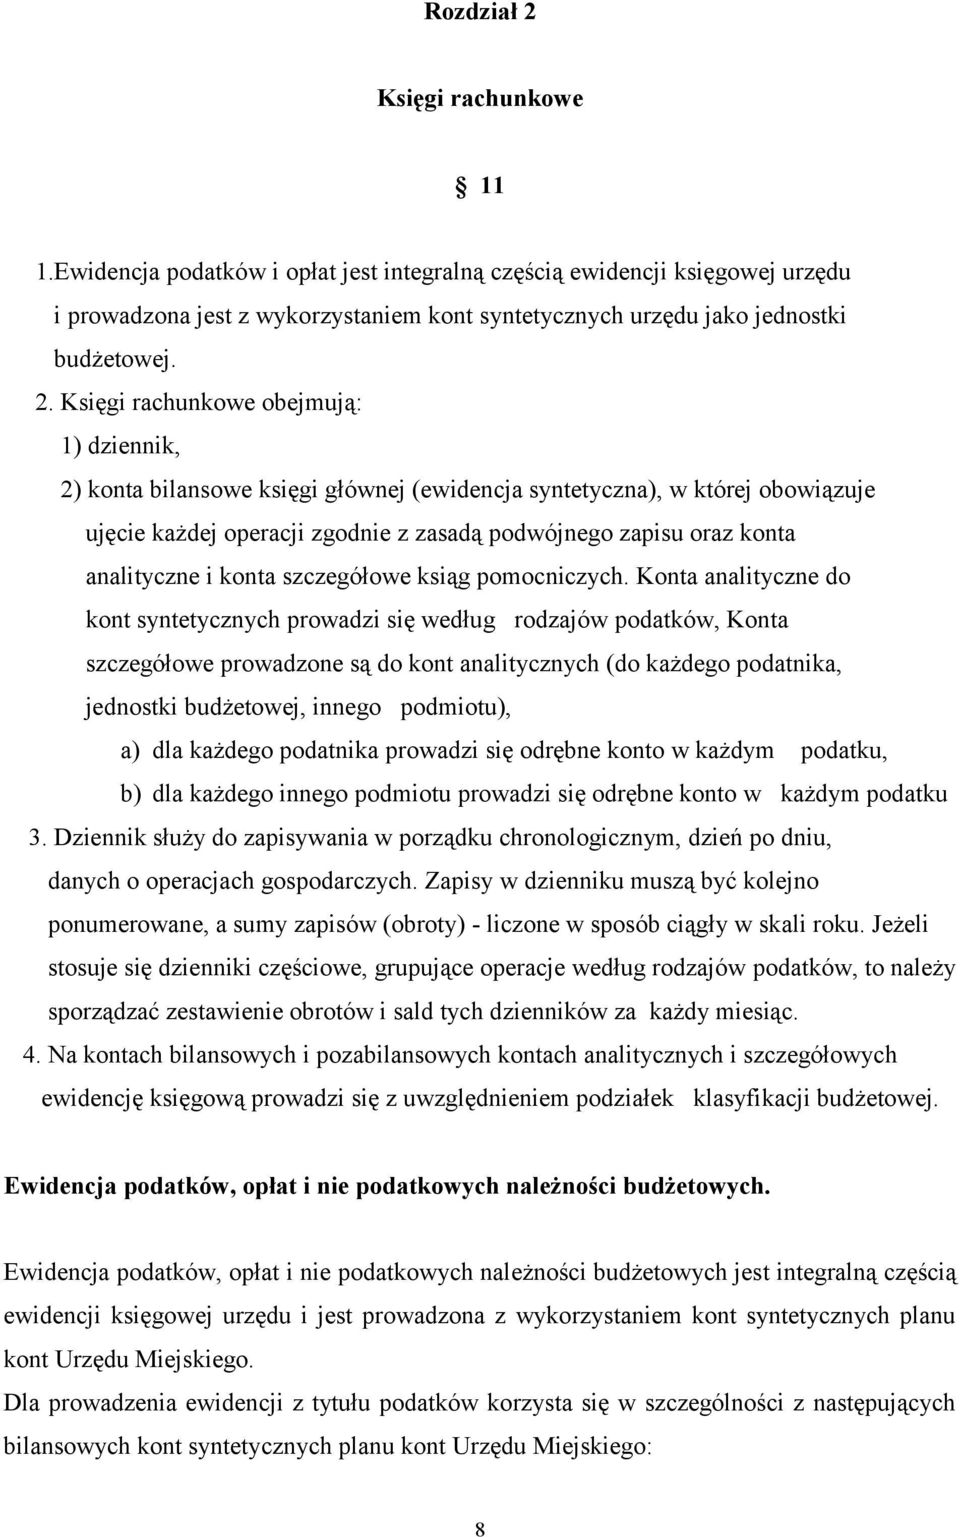 analityczne i konta szczegółowe ksiąg pomocniczych.